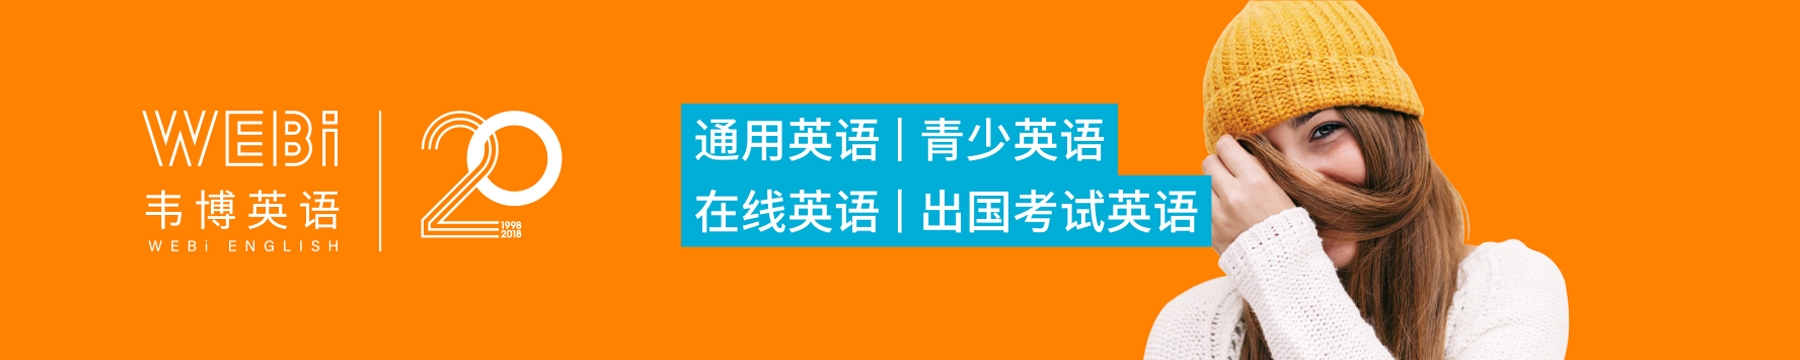 杭州韦博语言培训中心